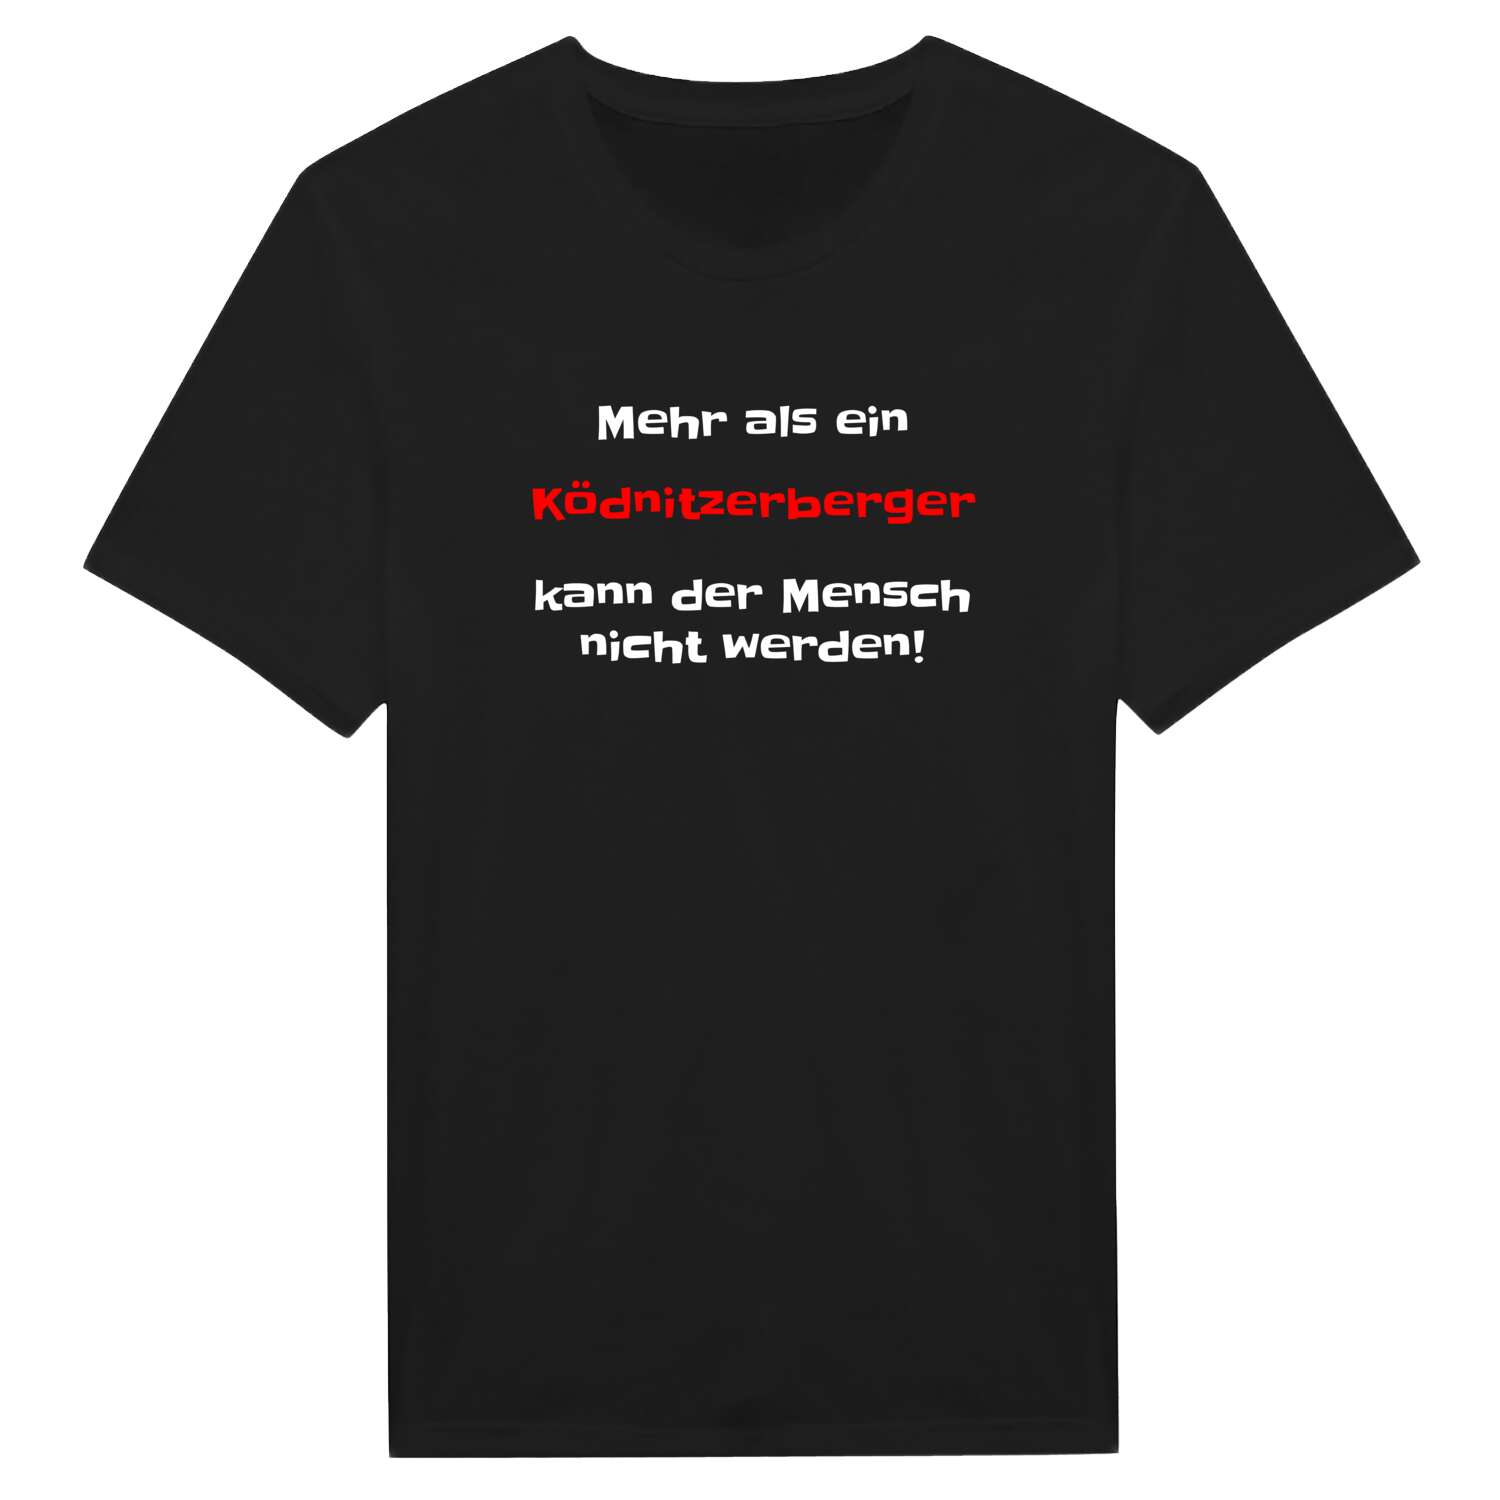 Ködnitzerberg T-Shirt »Mehr als ein«